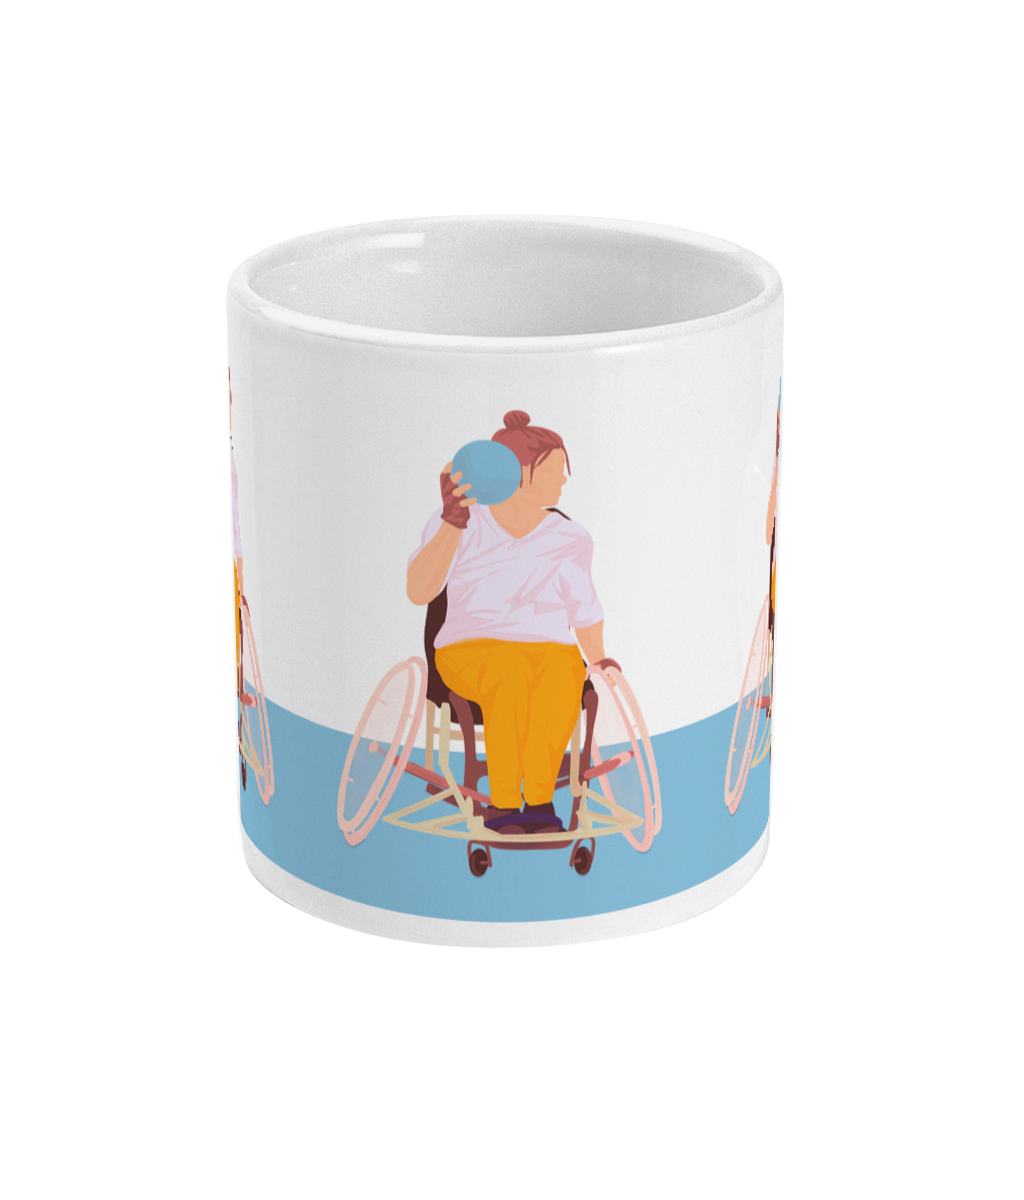 Handchair cup or mug "Handball woman" - Customizable